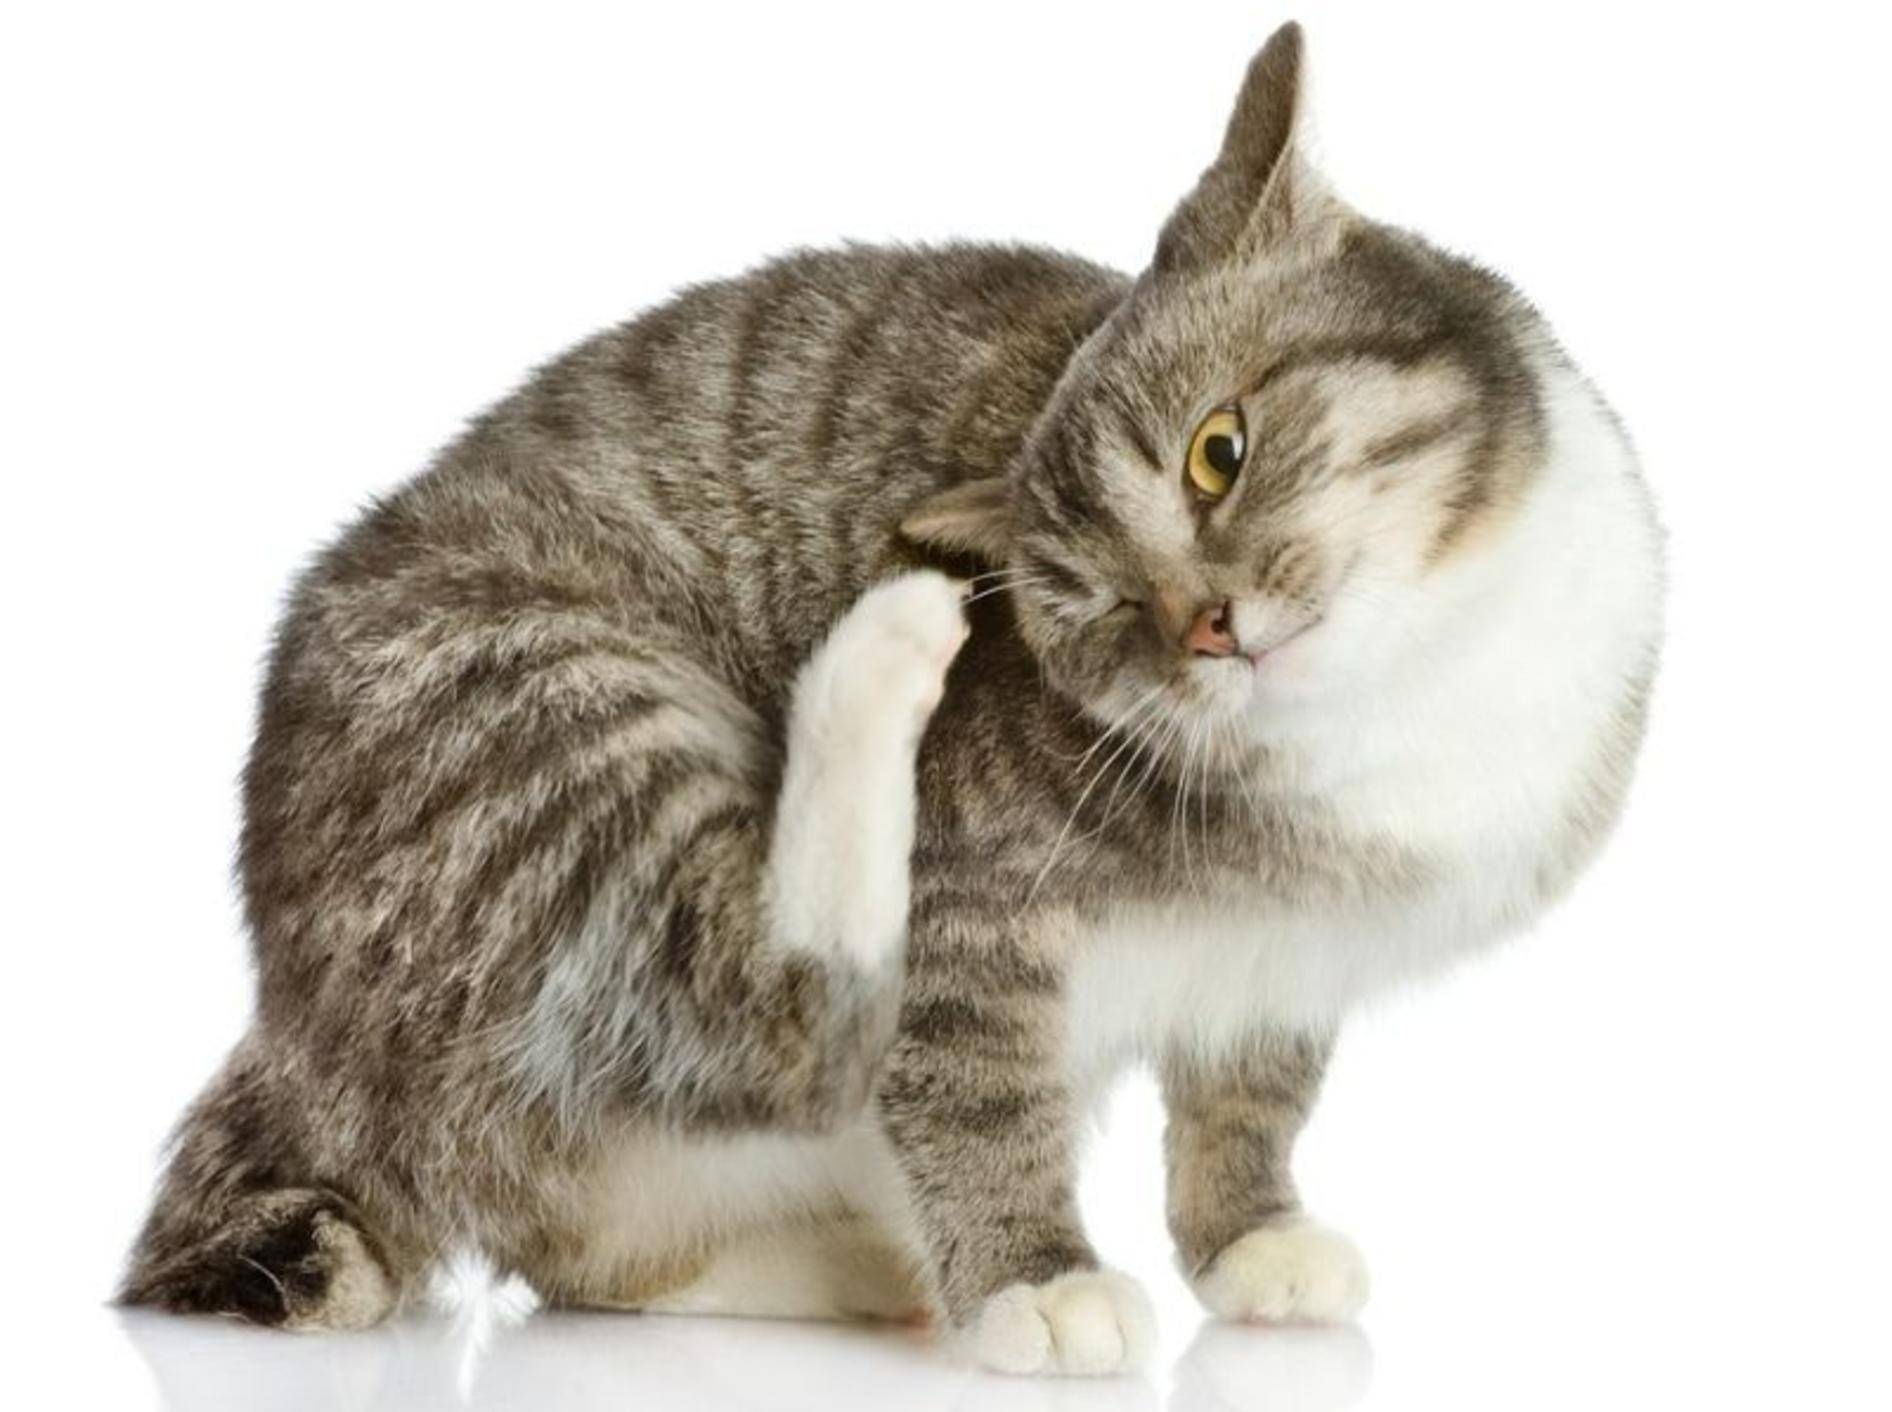 Katze kratzt sich am Ohr - Was ist die Ursache?